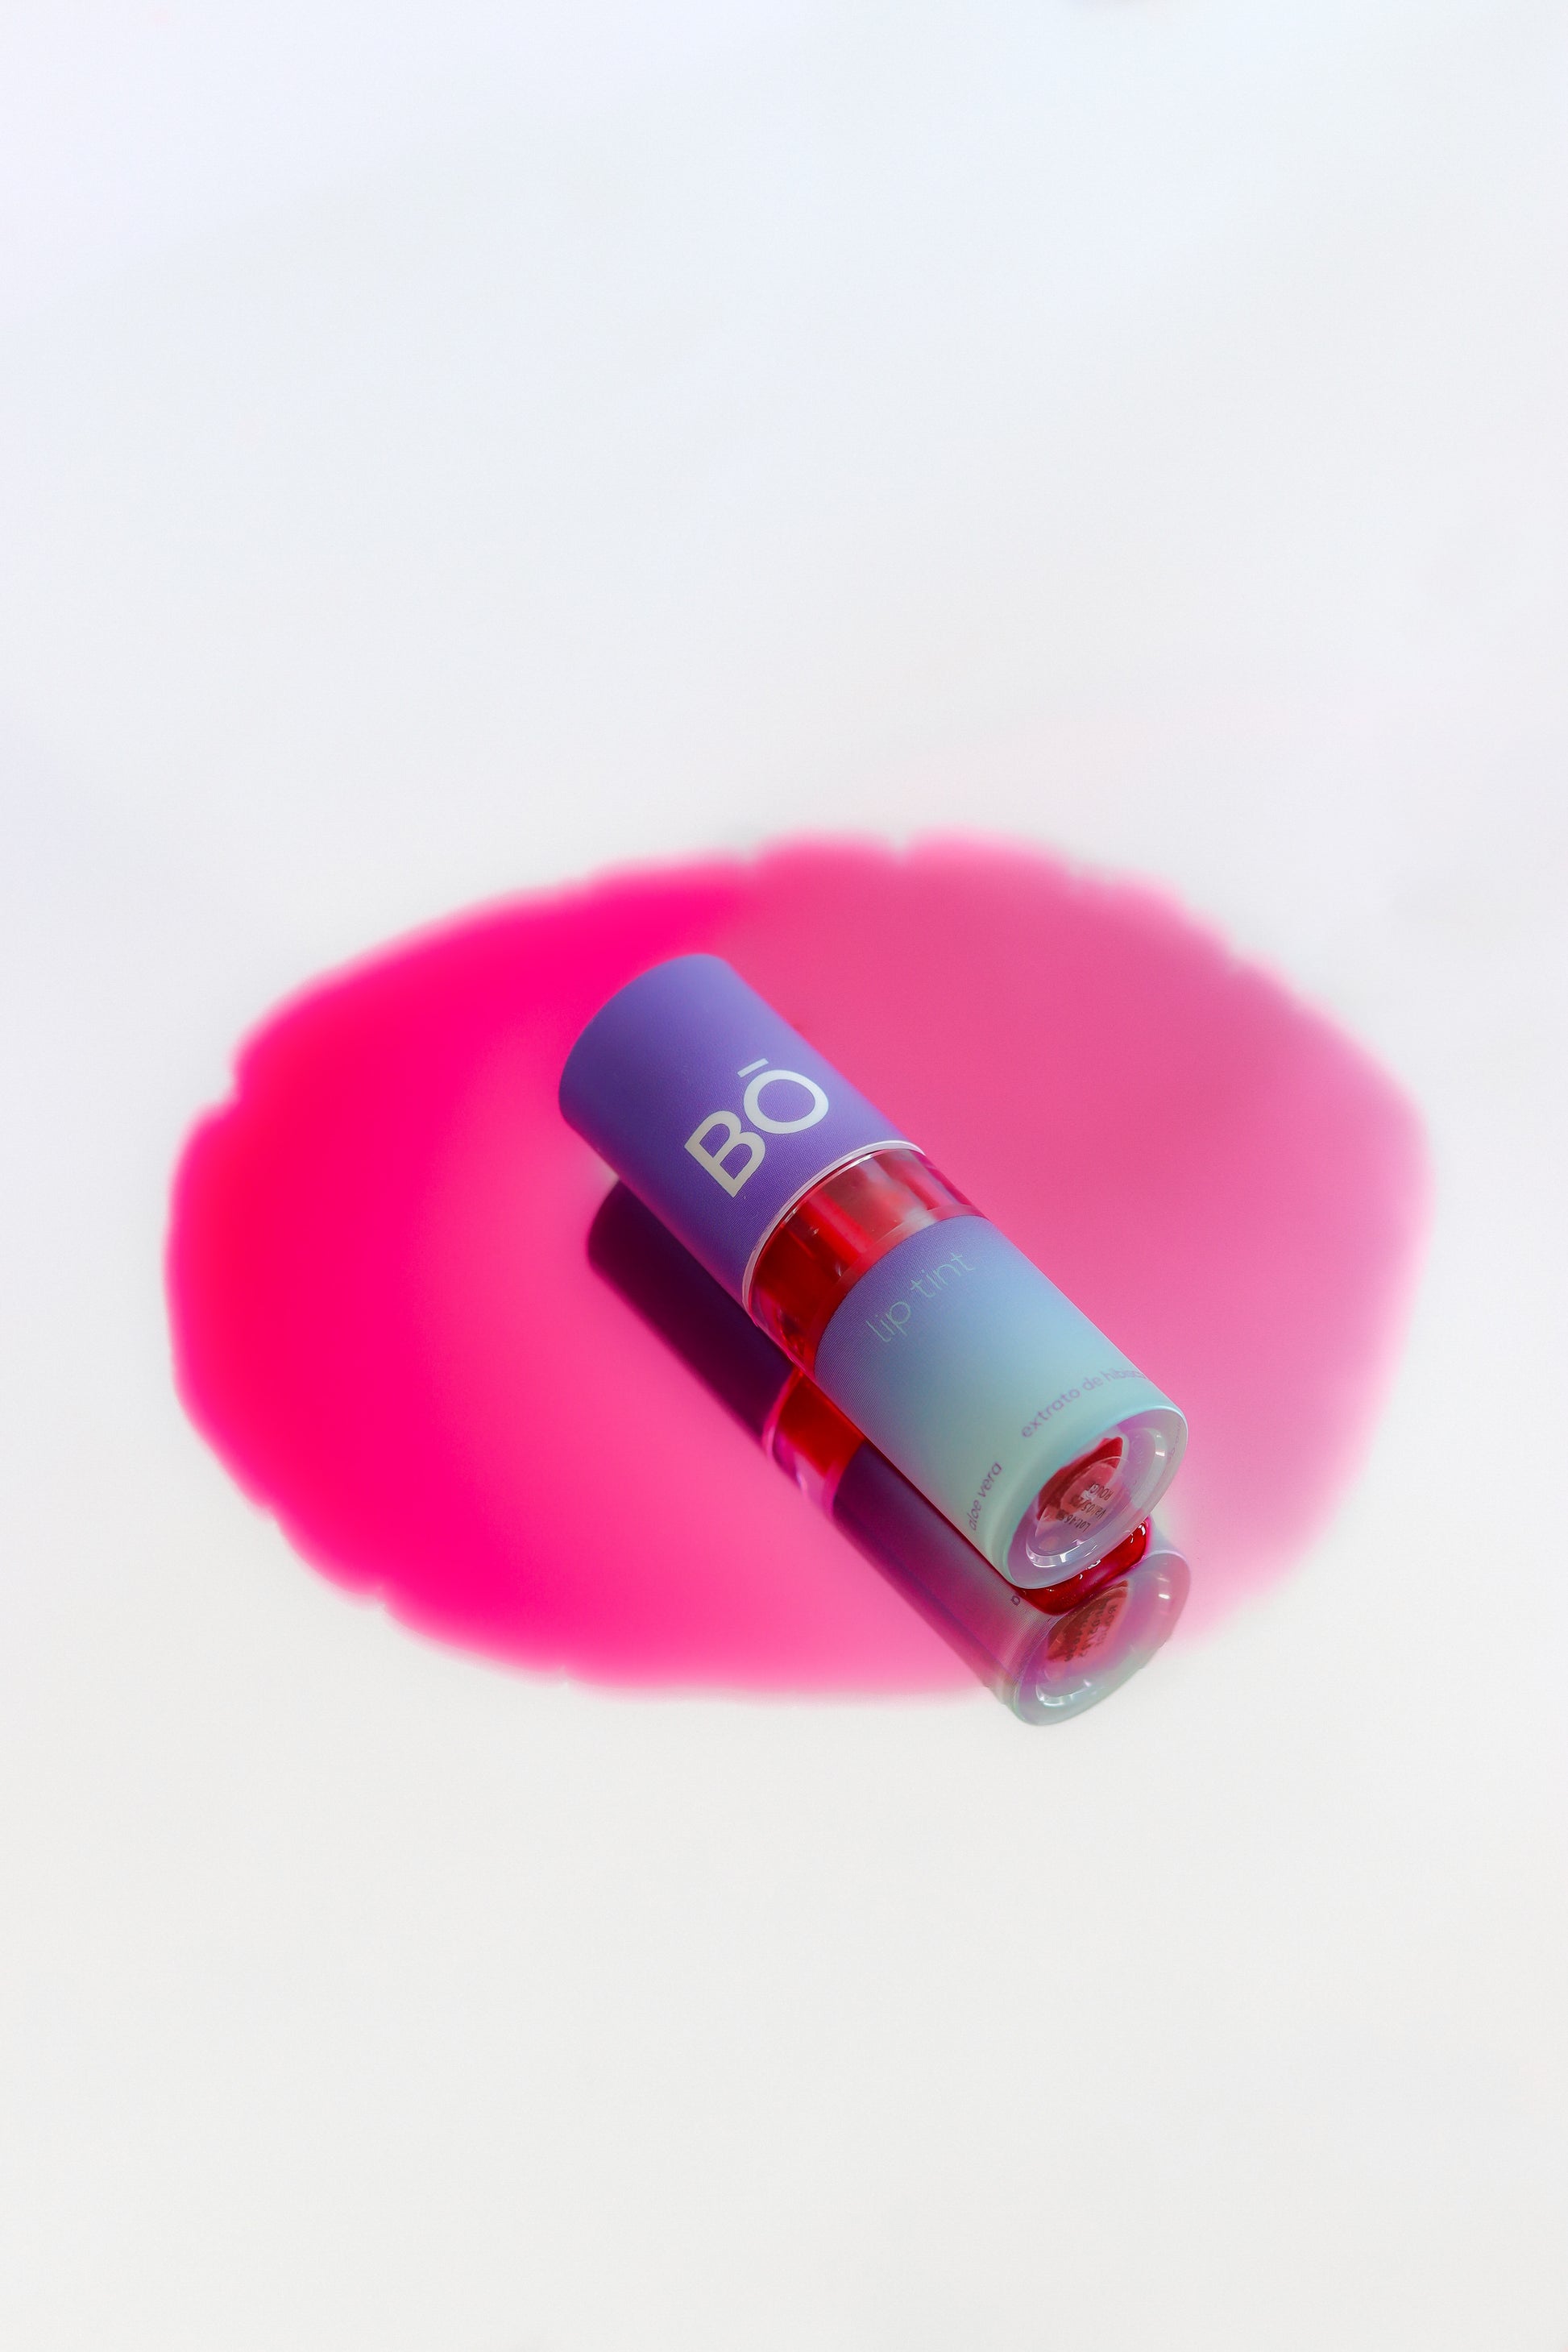 Embalagem de batom líquido lip tint na cor rosa forte derramado sobre fundo espelhado